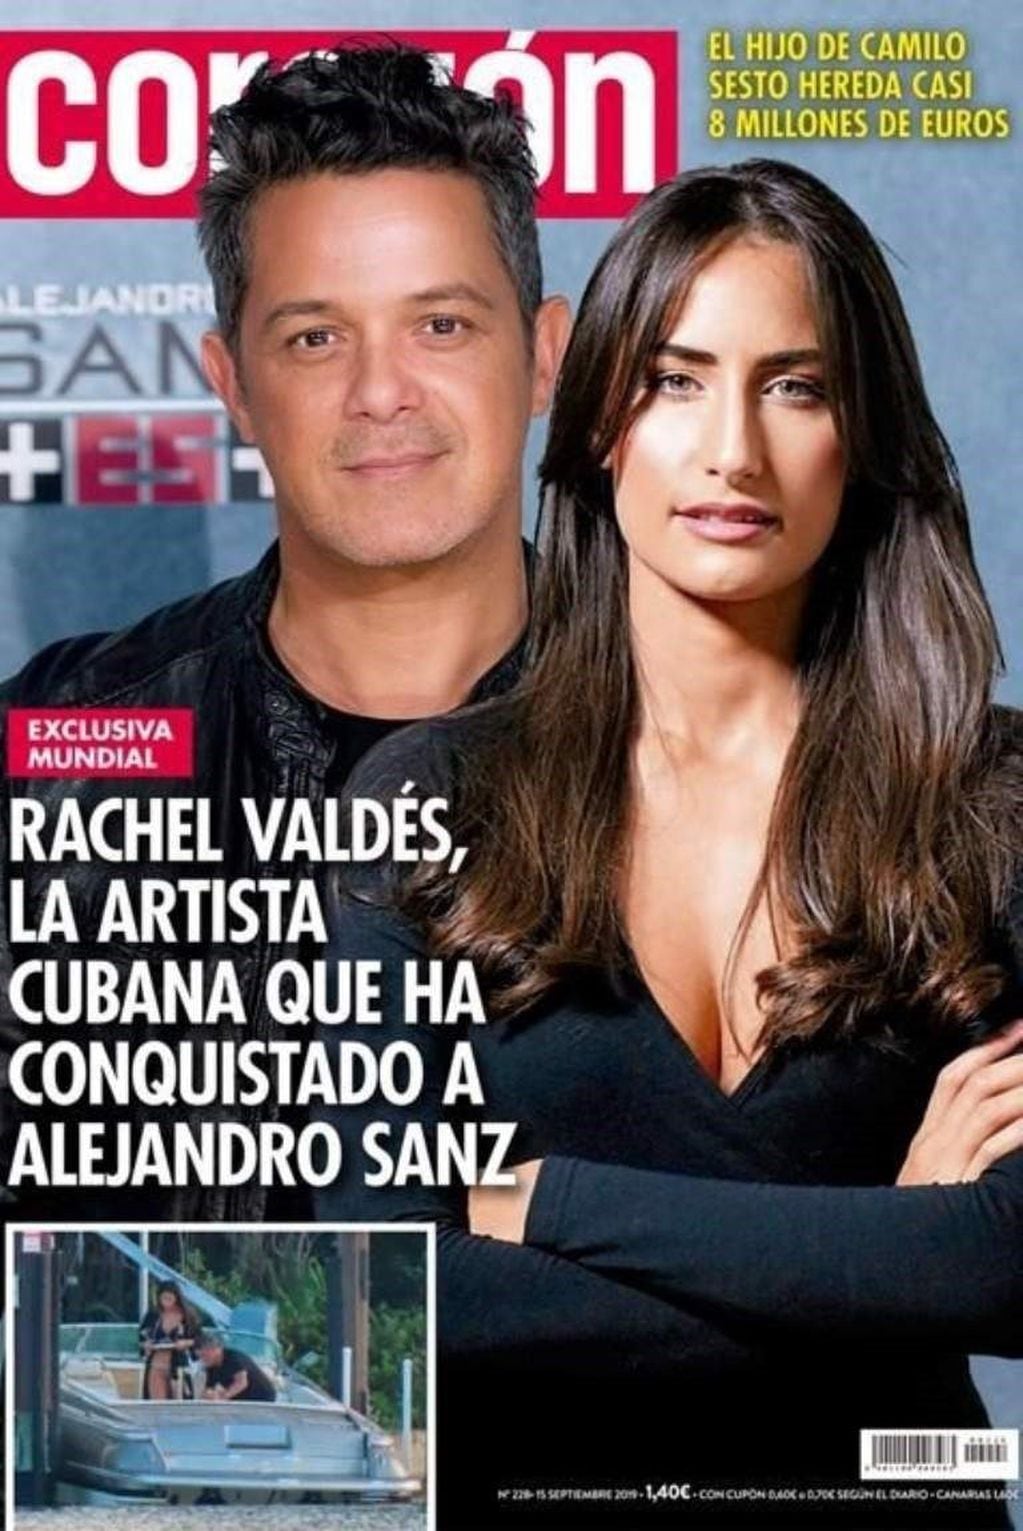 Alejandro sanz en un fotomontaje junto a su novia, Rachel Valdés.